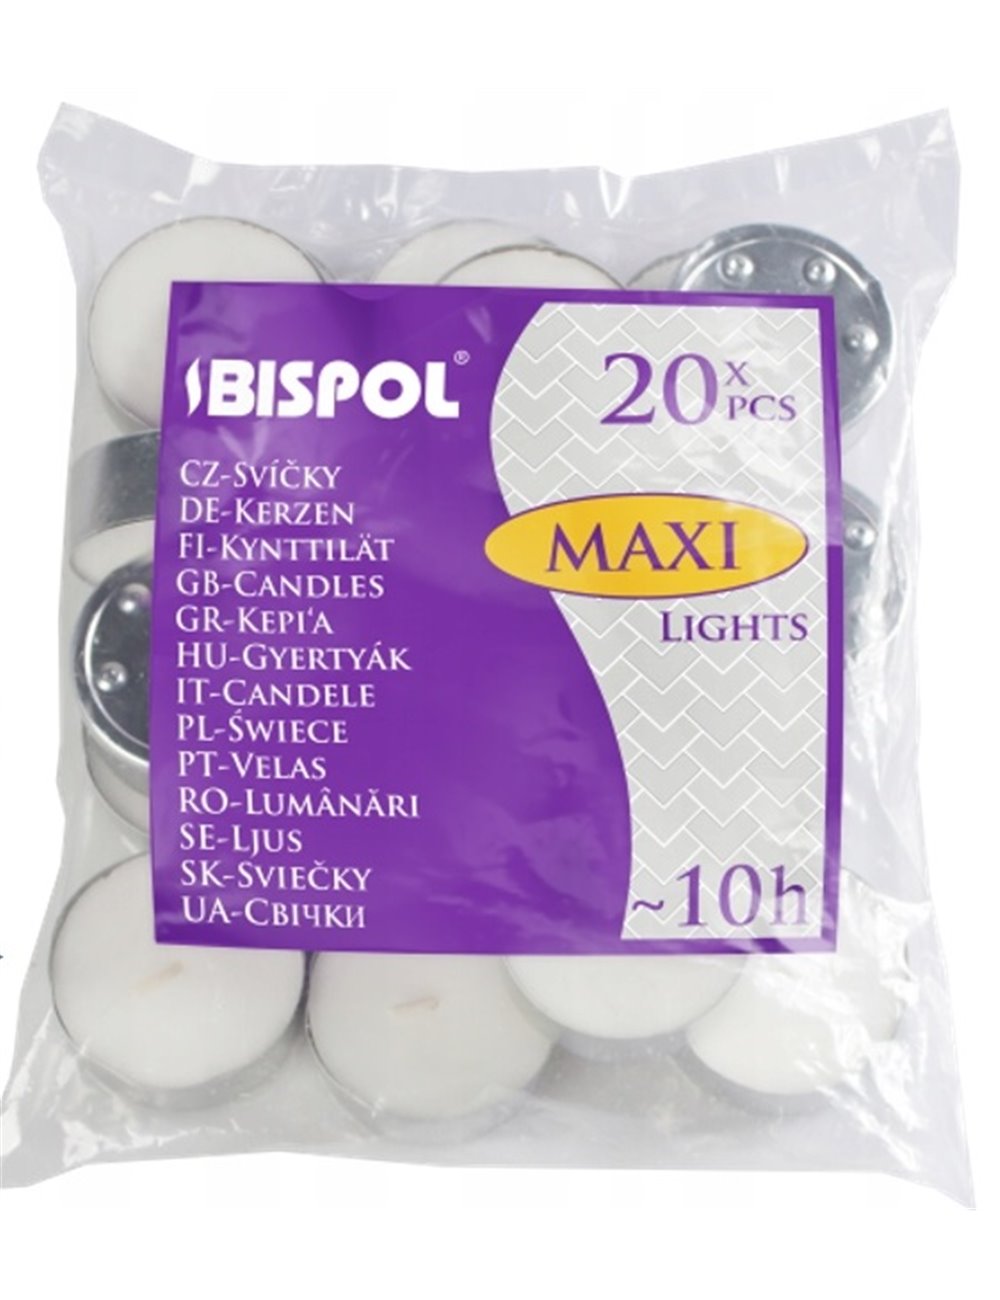 Podgrzewacze Bezzapachowa Bispol Maxi Lights (~10h) 20 szt